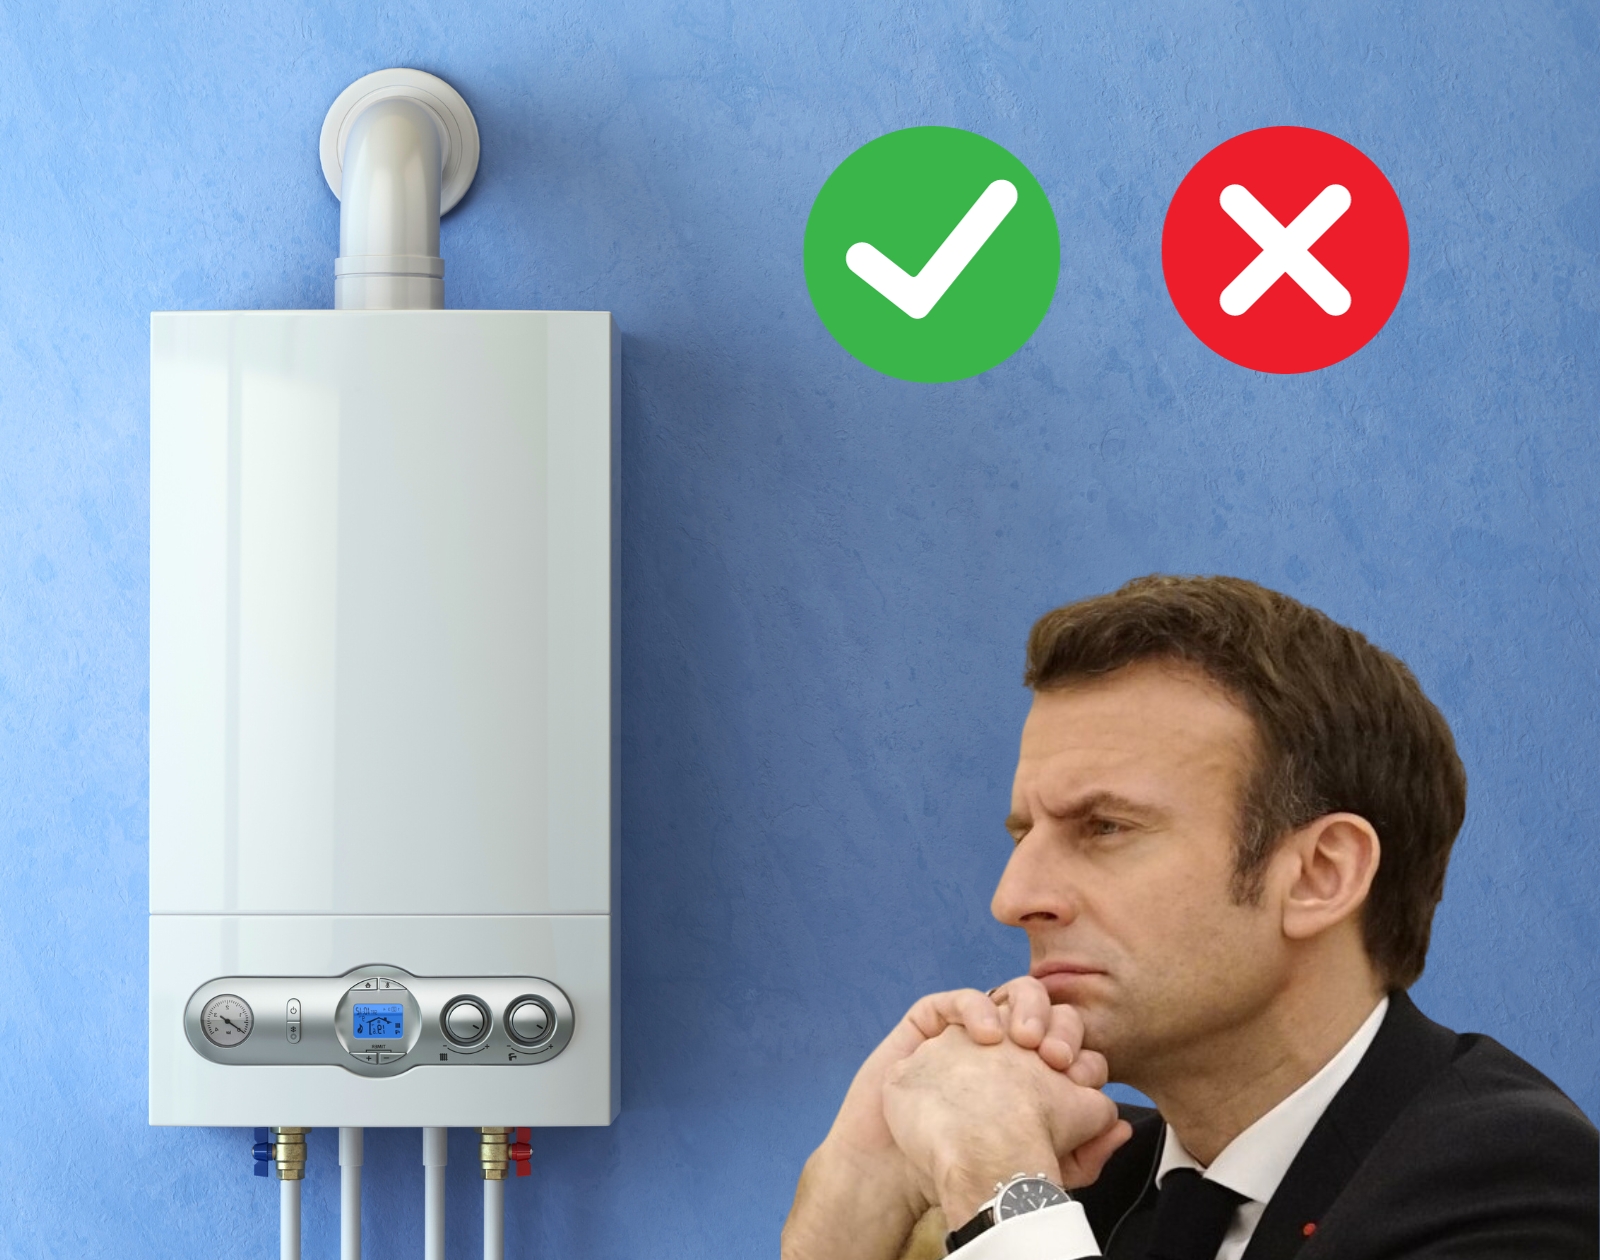 Interdiction des chaudières au gaz : l’énorme erreur d’Emmanuel Macron